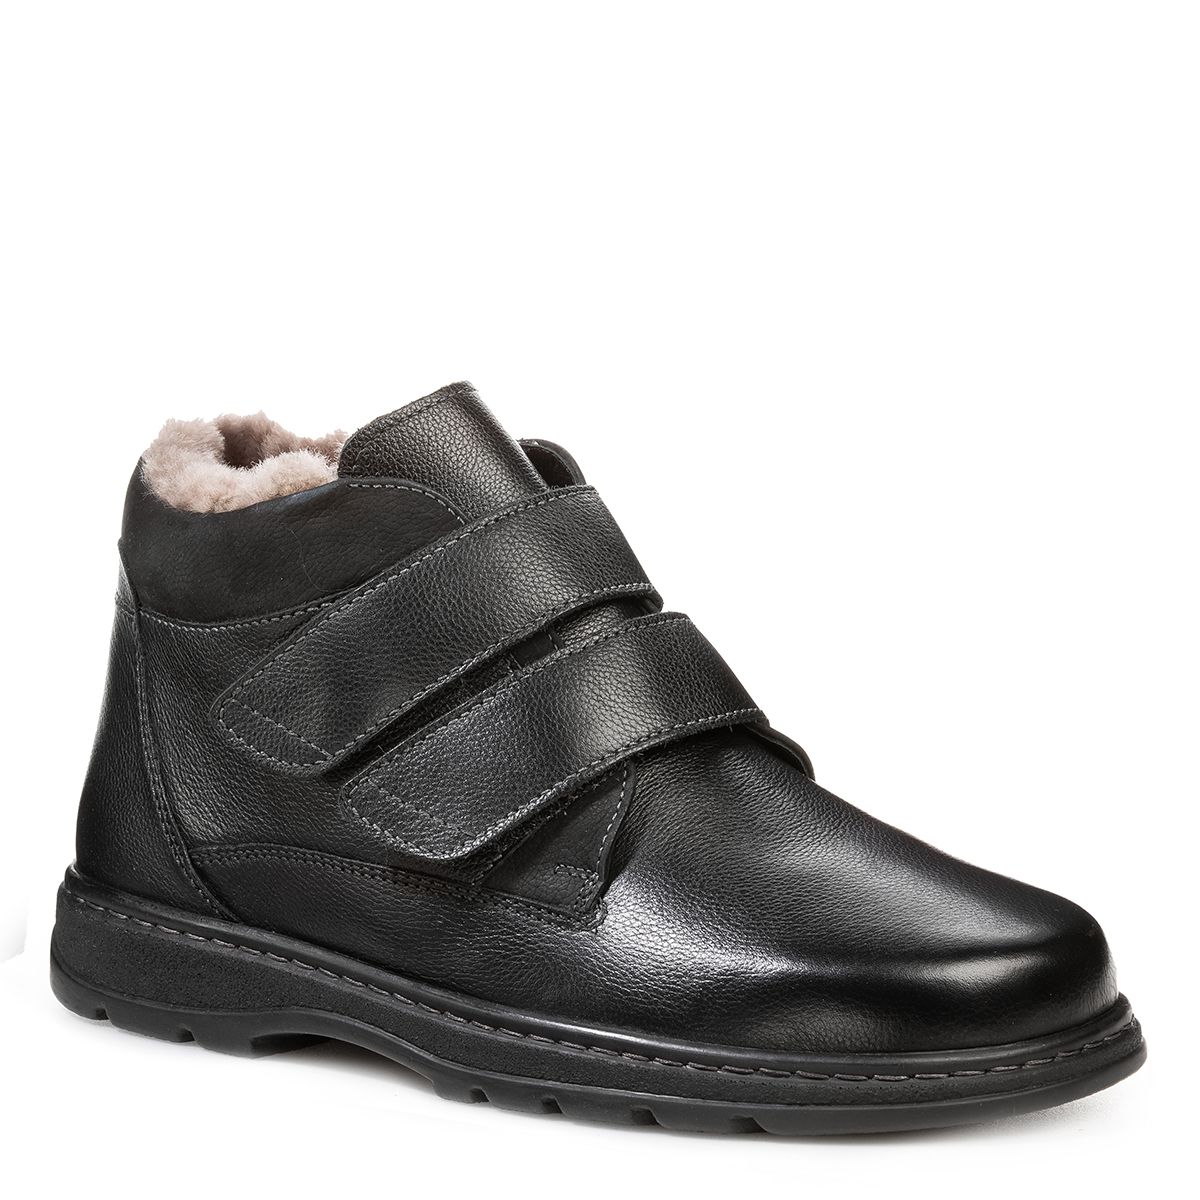 Мужские зимние ботинки Solidus Natura Man Stiefel черные ботинки мужские демисезонные solidus hardy stiefel чёрные